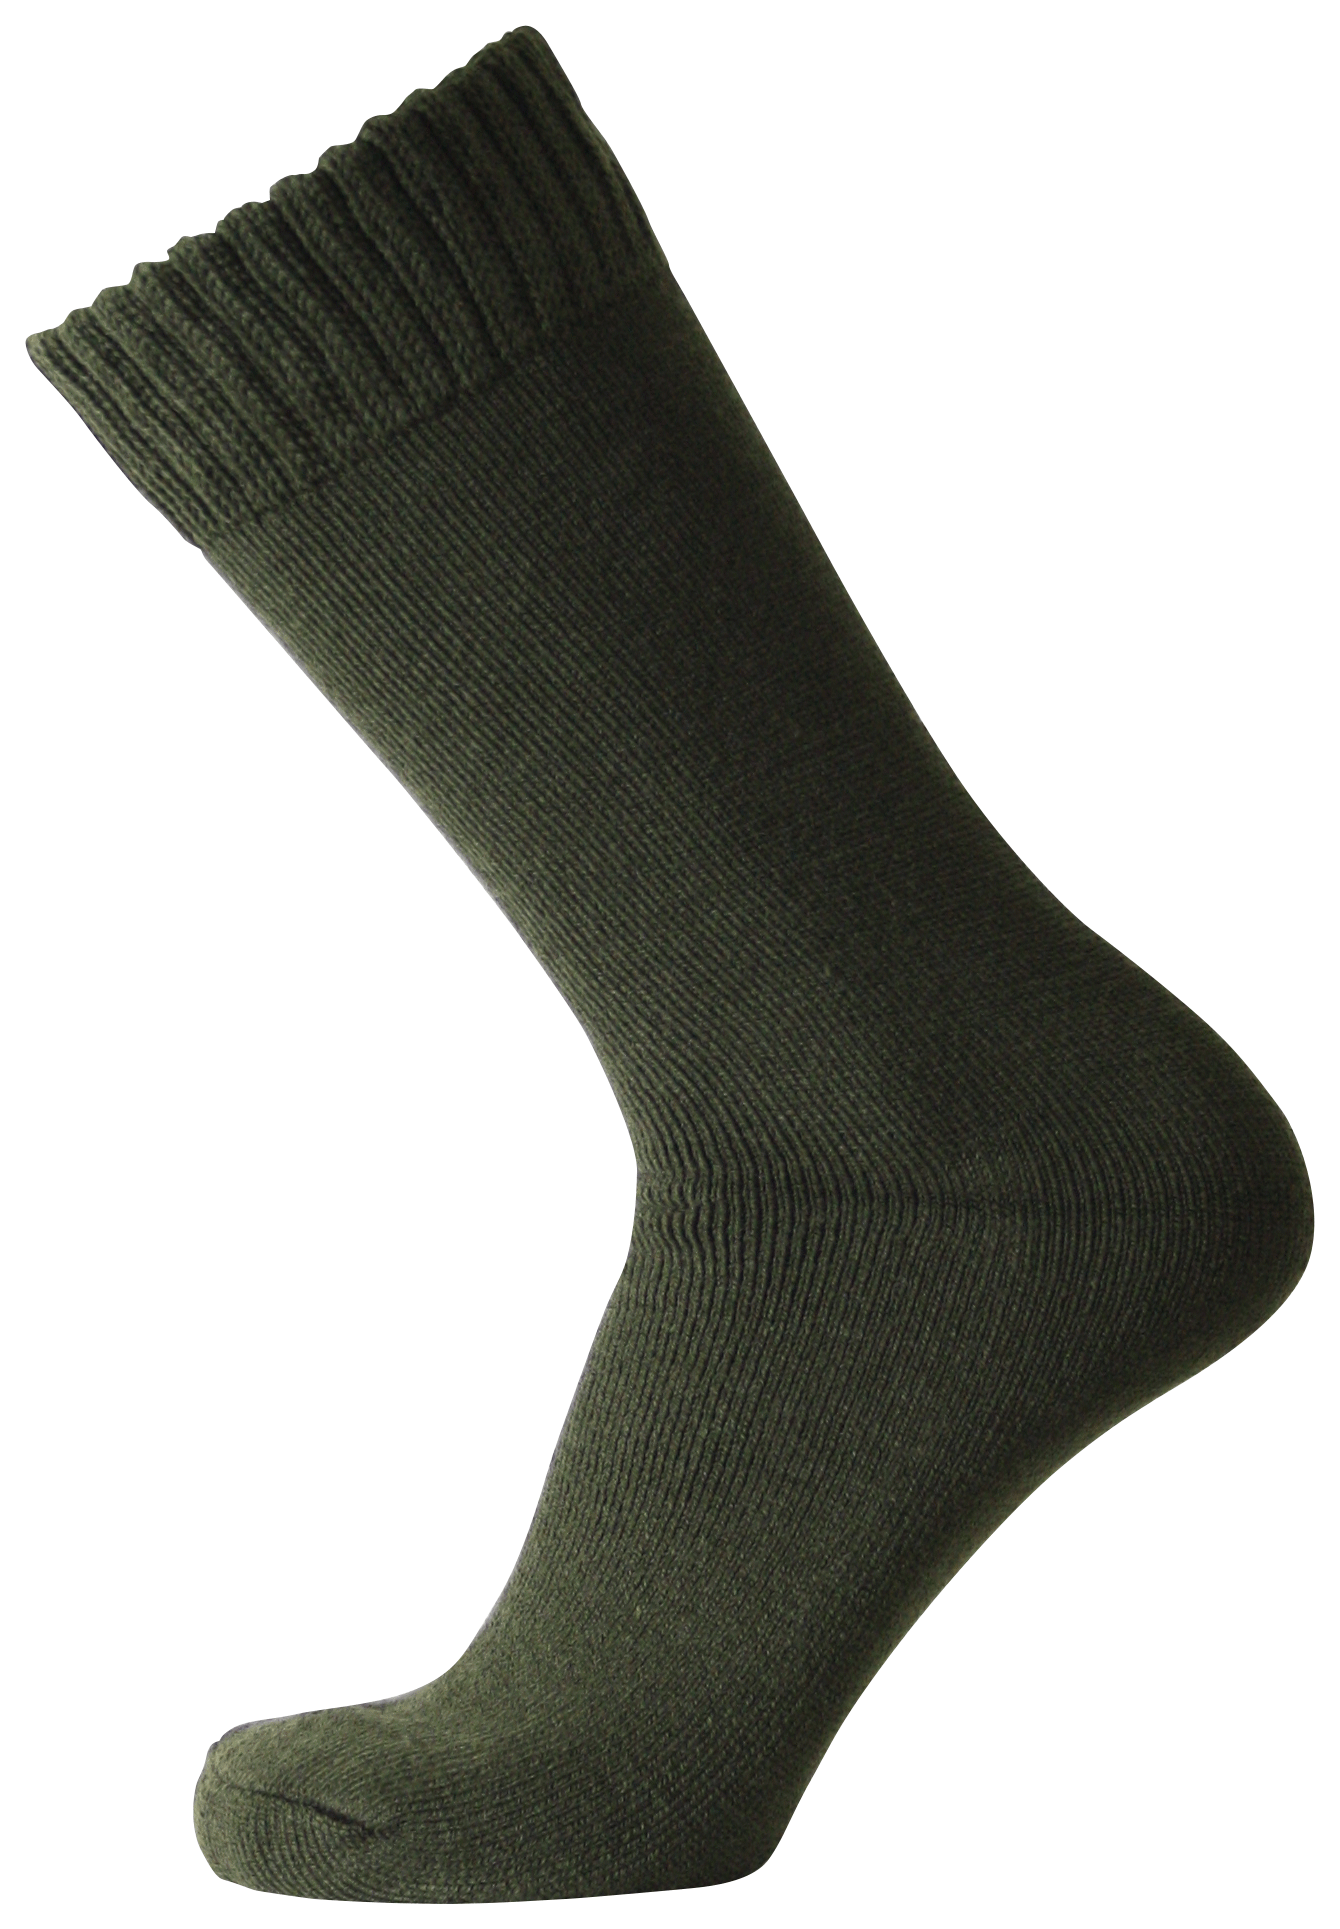 14278 - Men's Hunting Socks Khaki Green (3 pack)